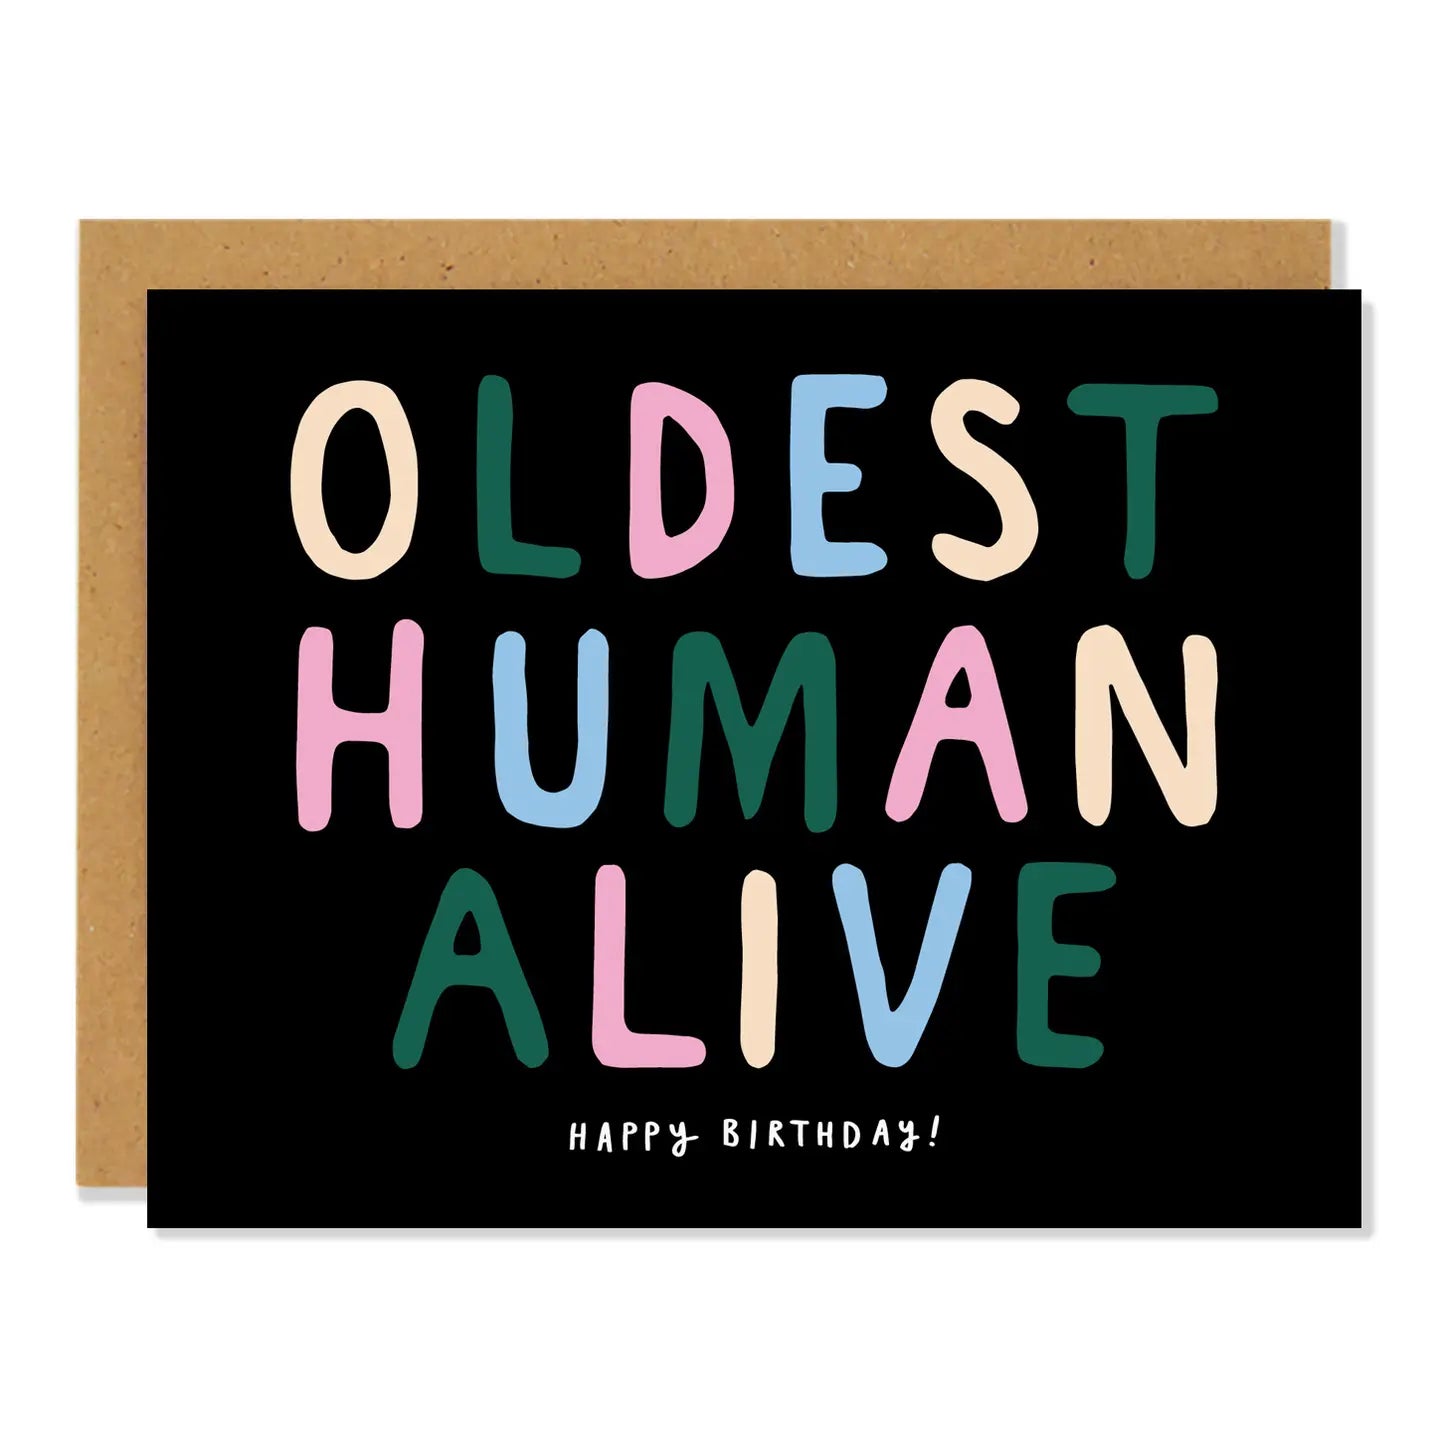 Badger & Burke “Oldest Human Alive” Card